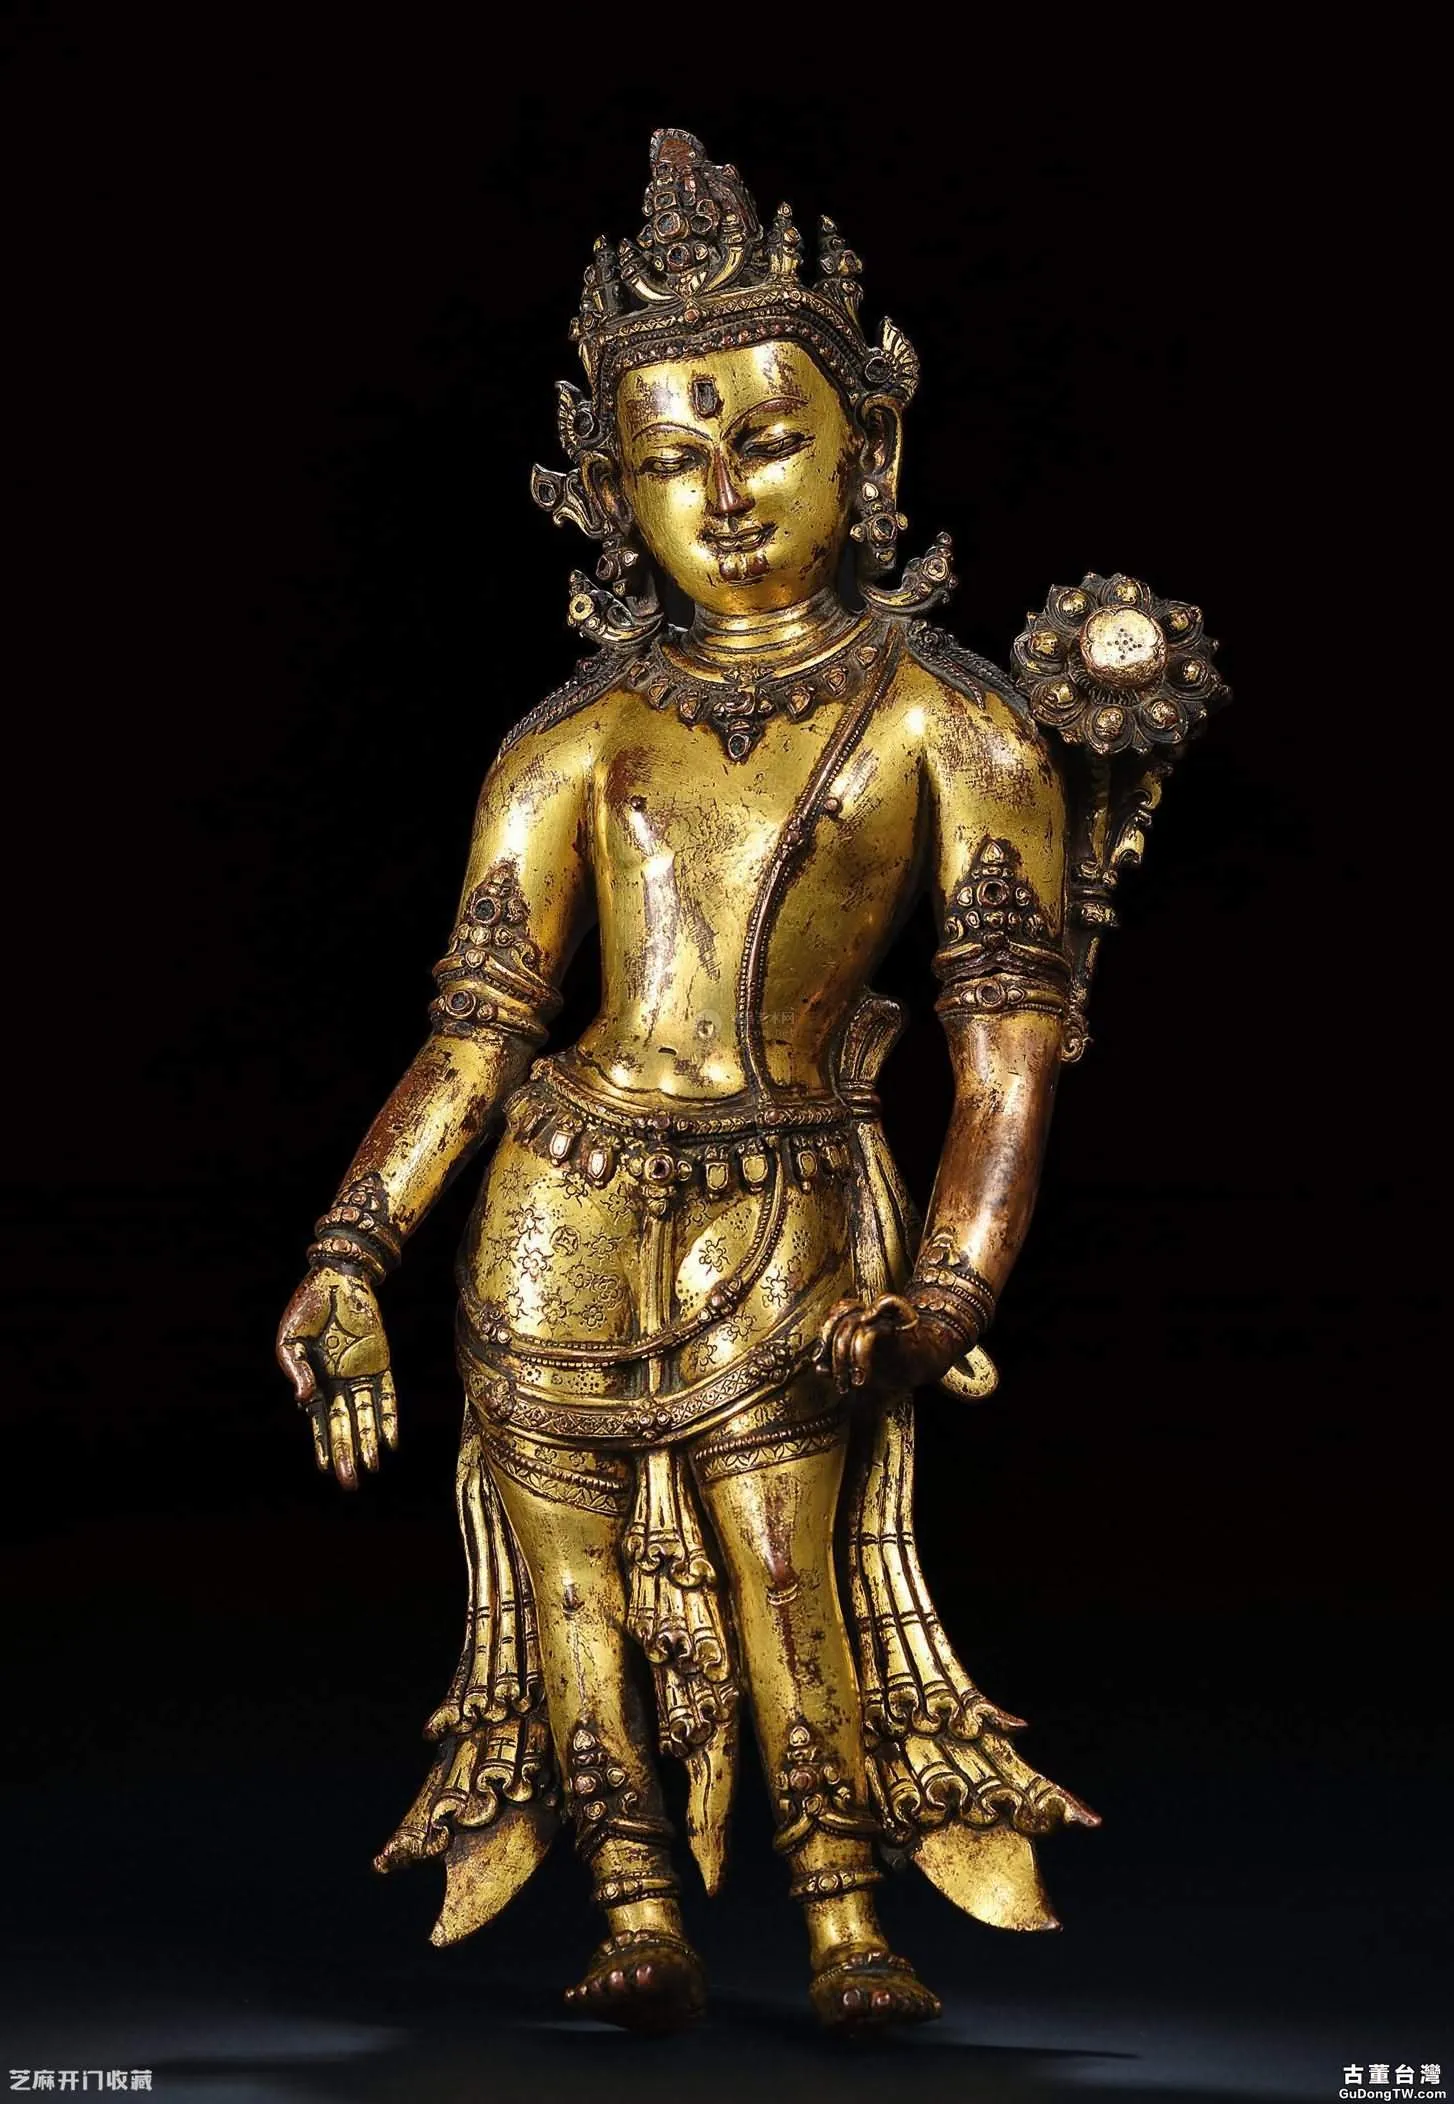  尼泊爾銅鎏金佛像如何辨別